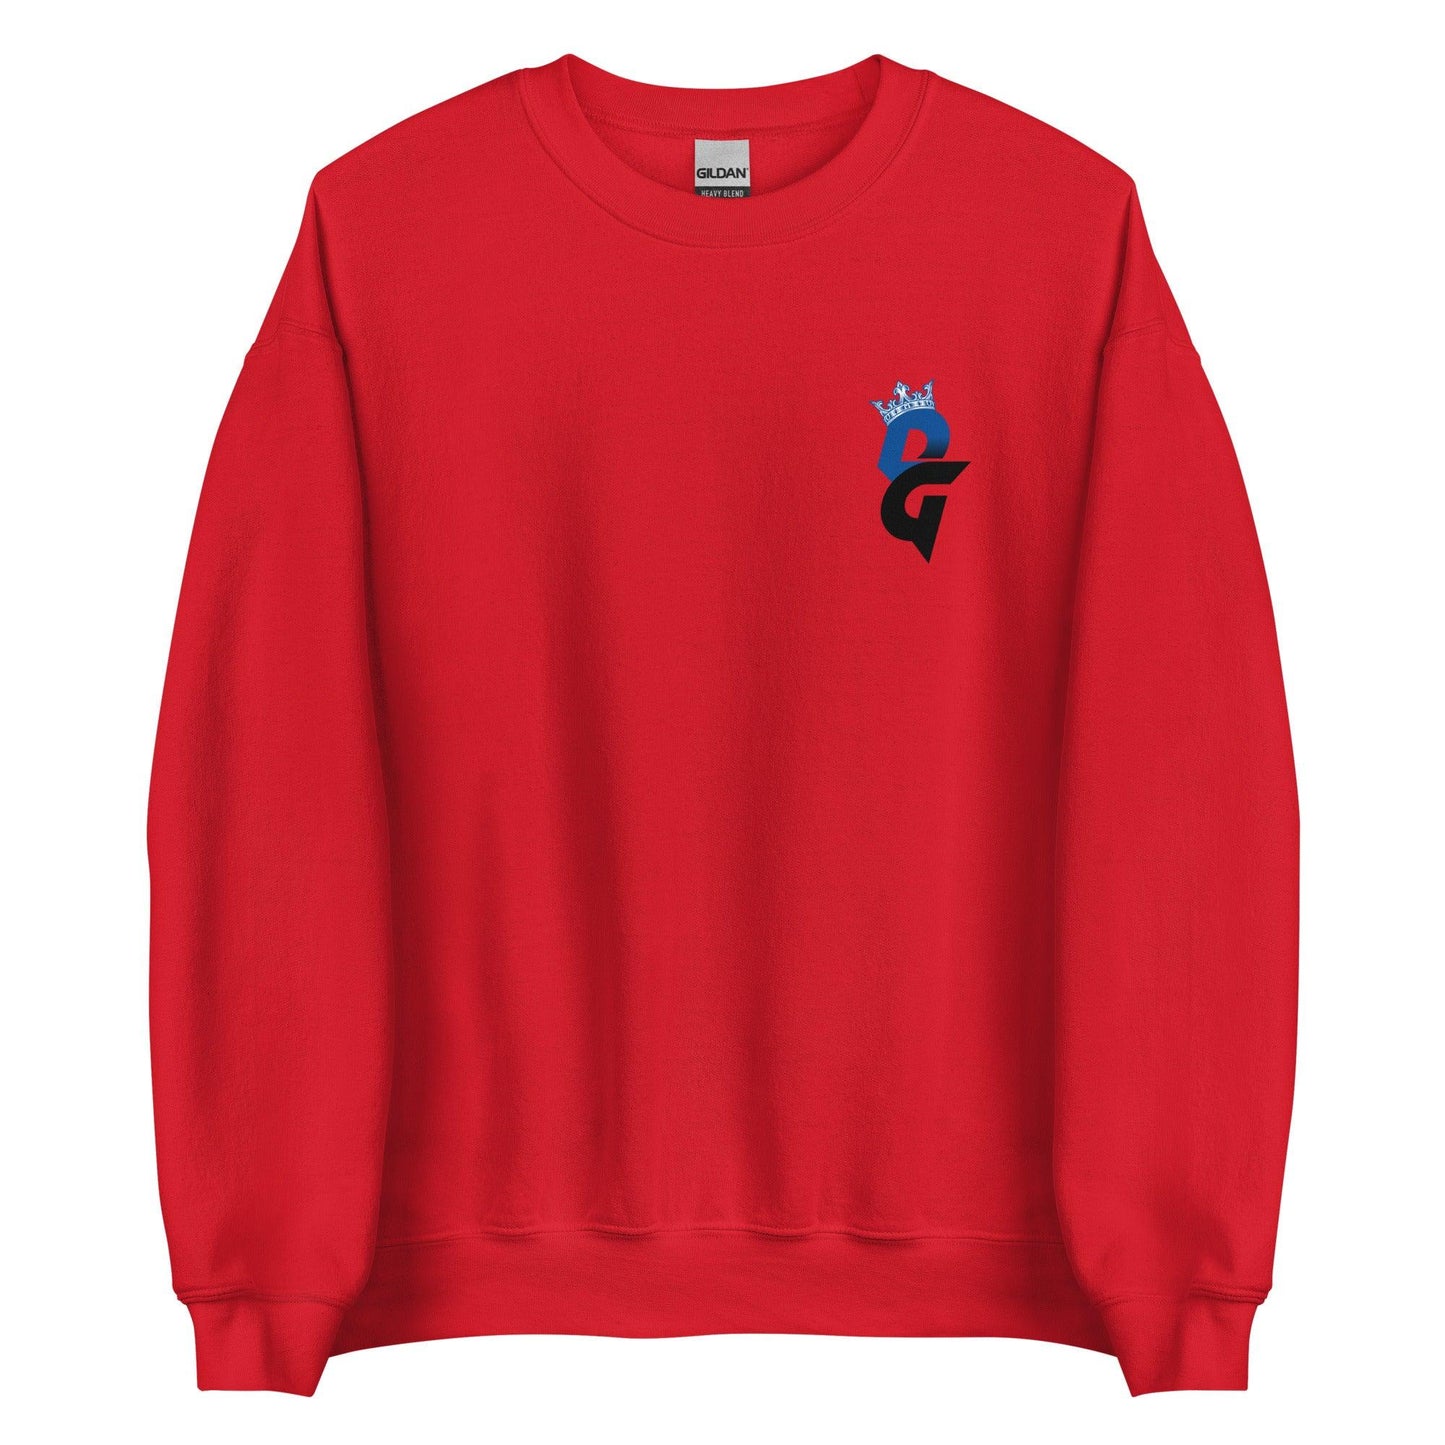 Darren Grainger "Essential" Sweatshirt - Fan Arch